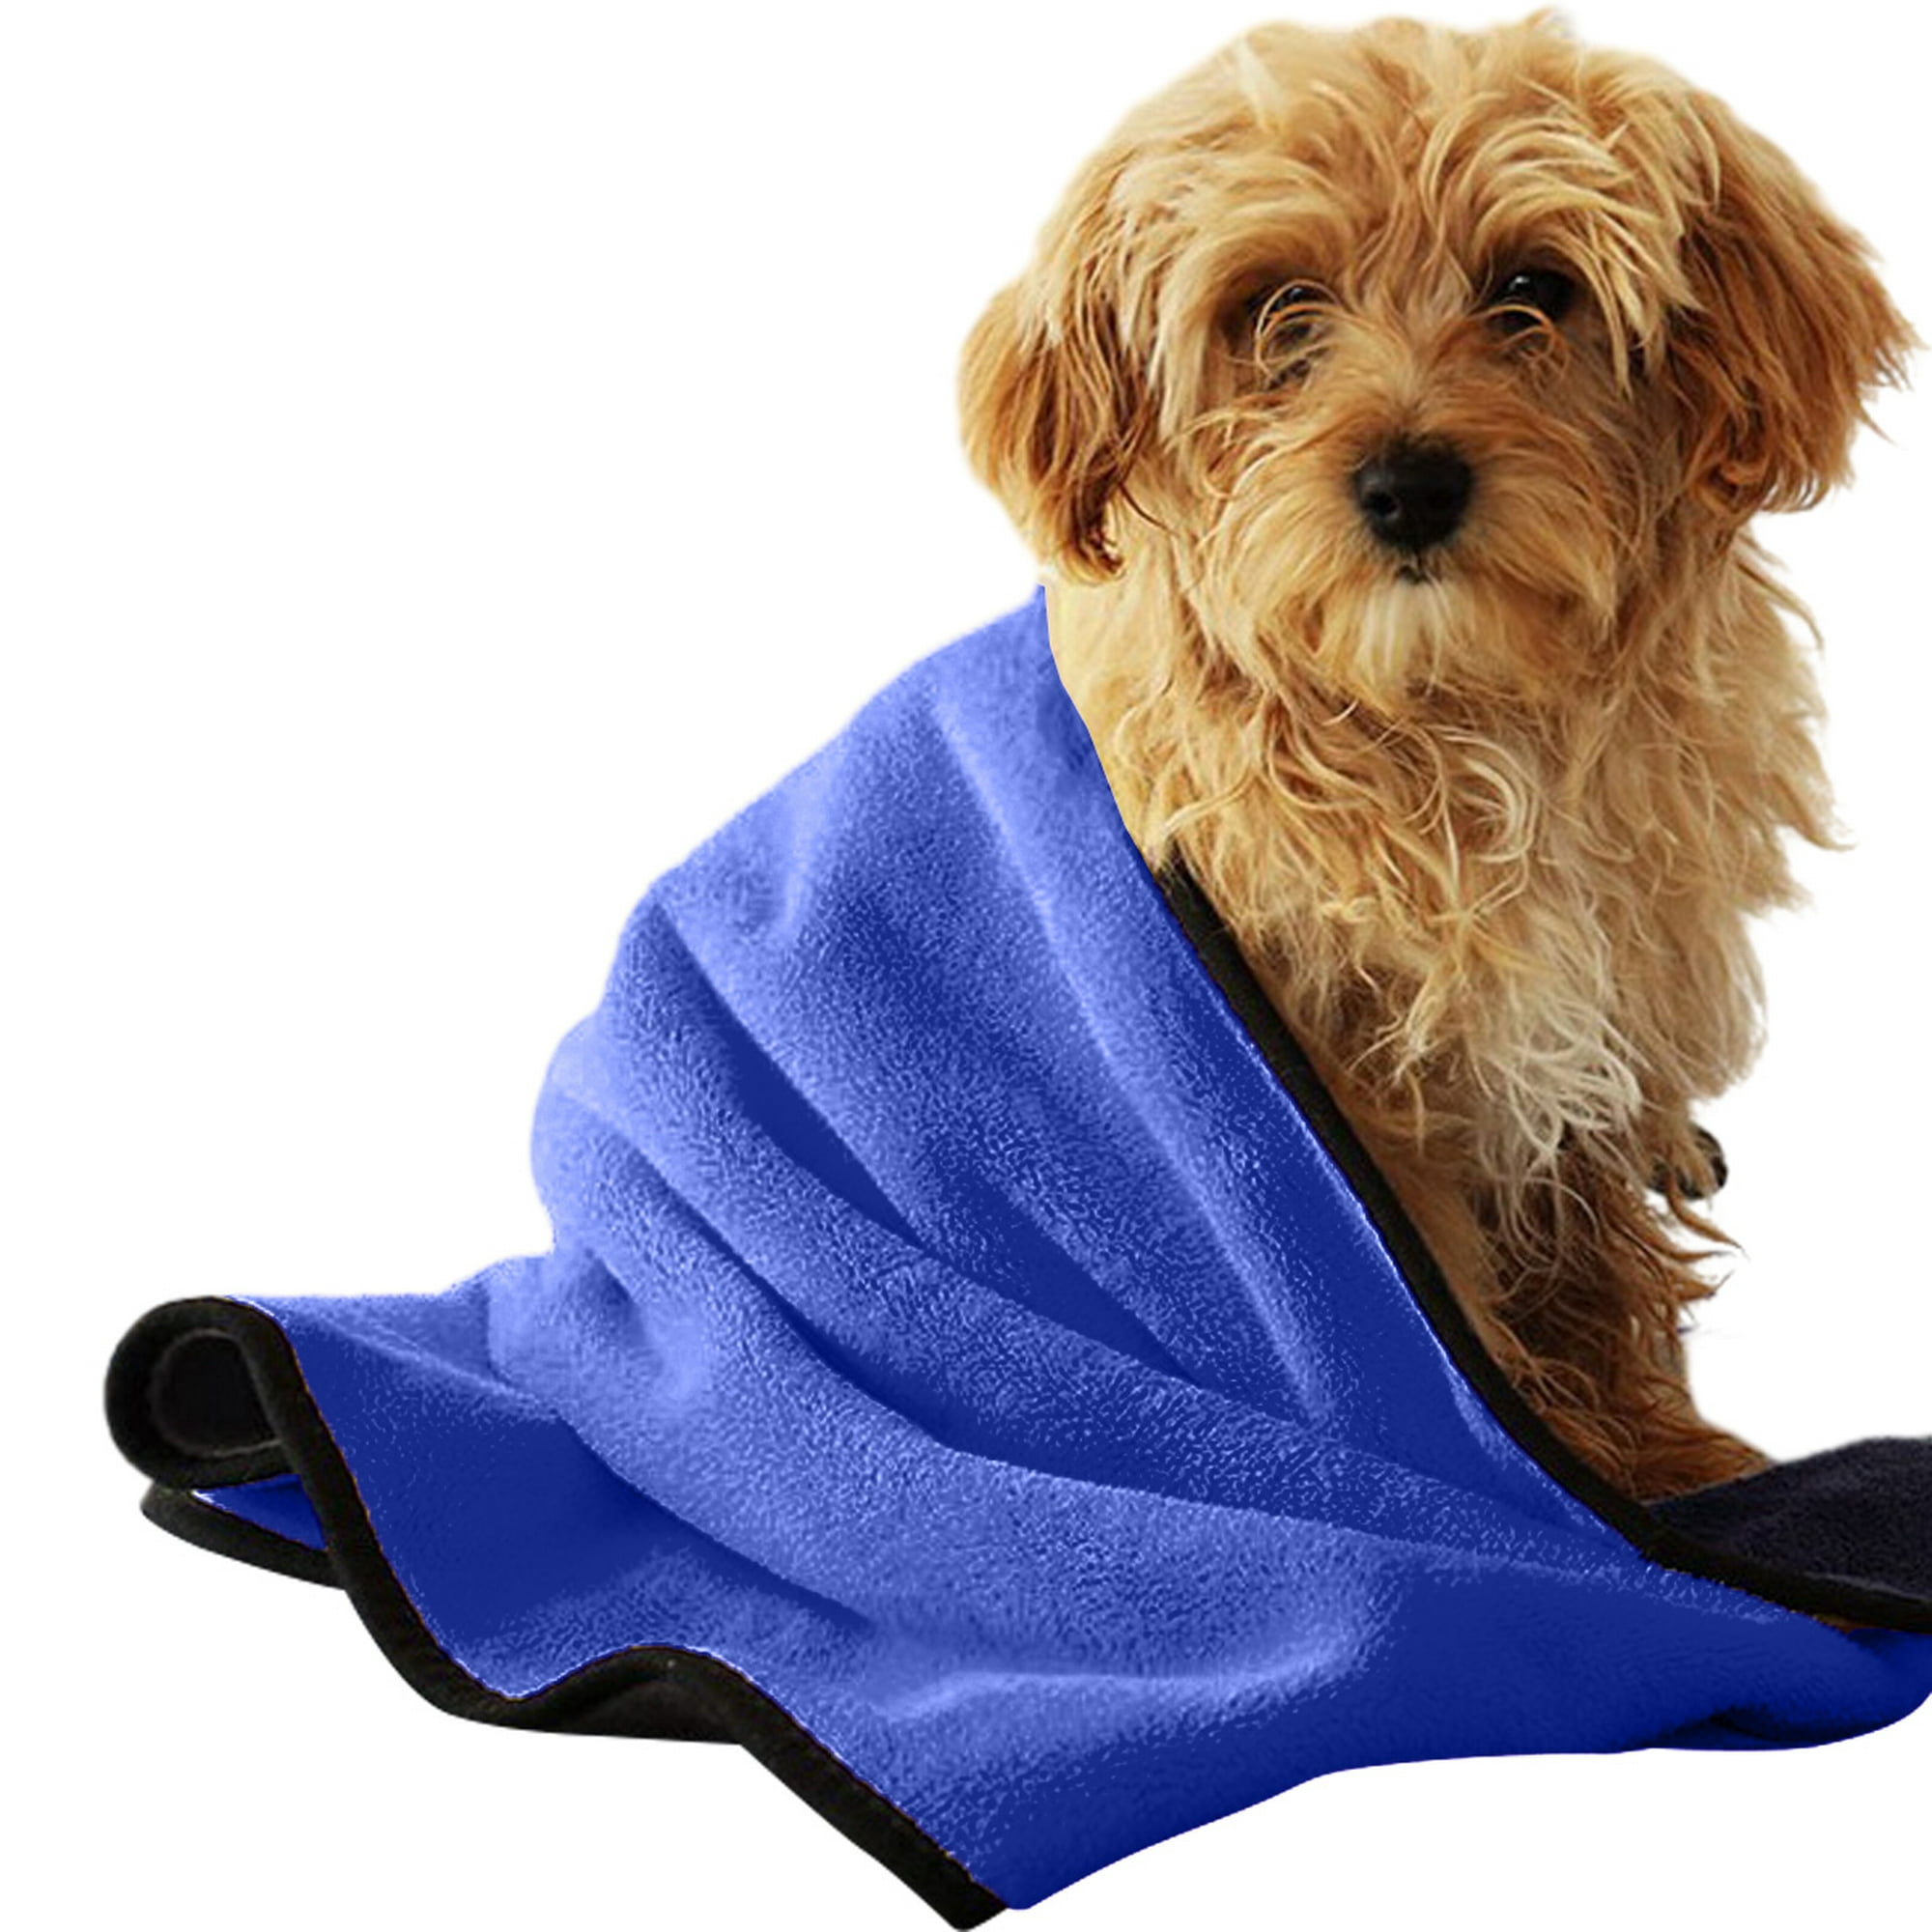  Geyecete Toalla de baño para perro, secado rápido, secado rápido,  rejilla de piña, secado rápido, súper absorbente, toalla de baño para  mascotas, perros y gatos, color morado, talla 3XL : Productos